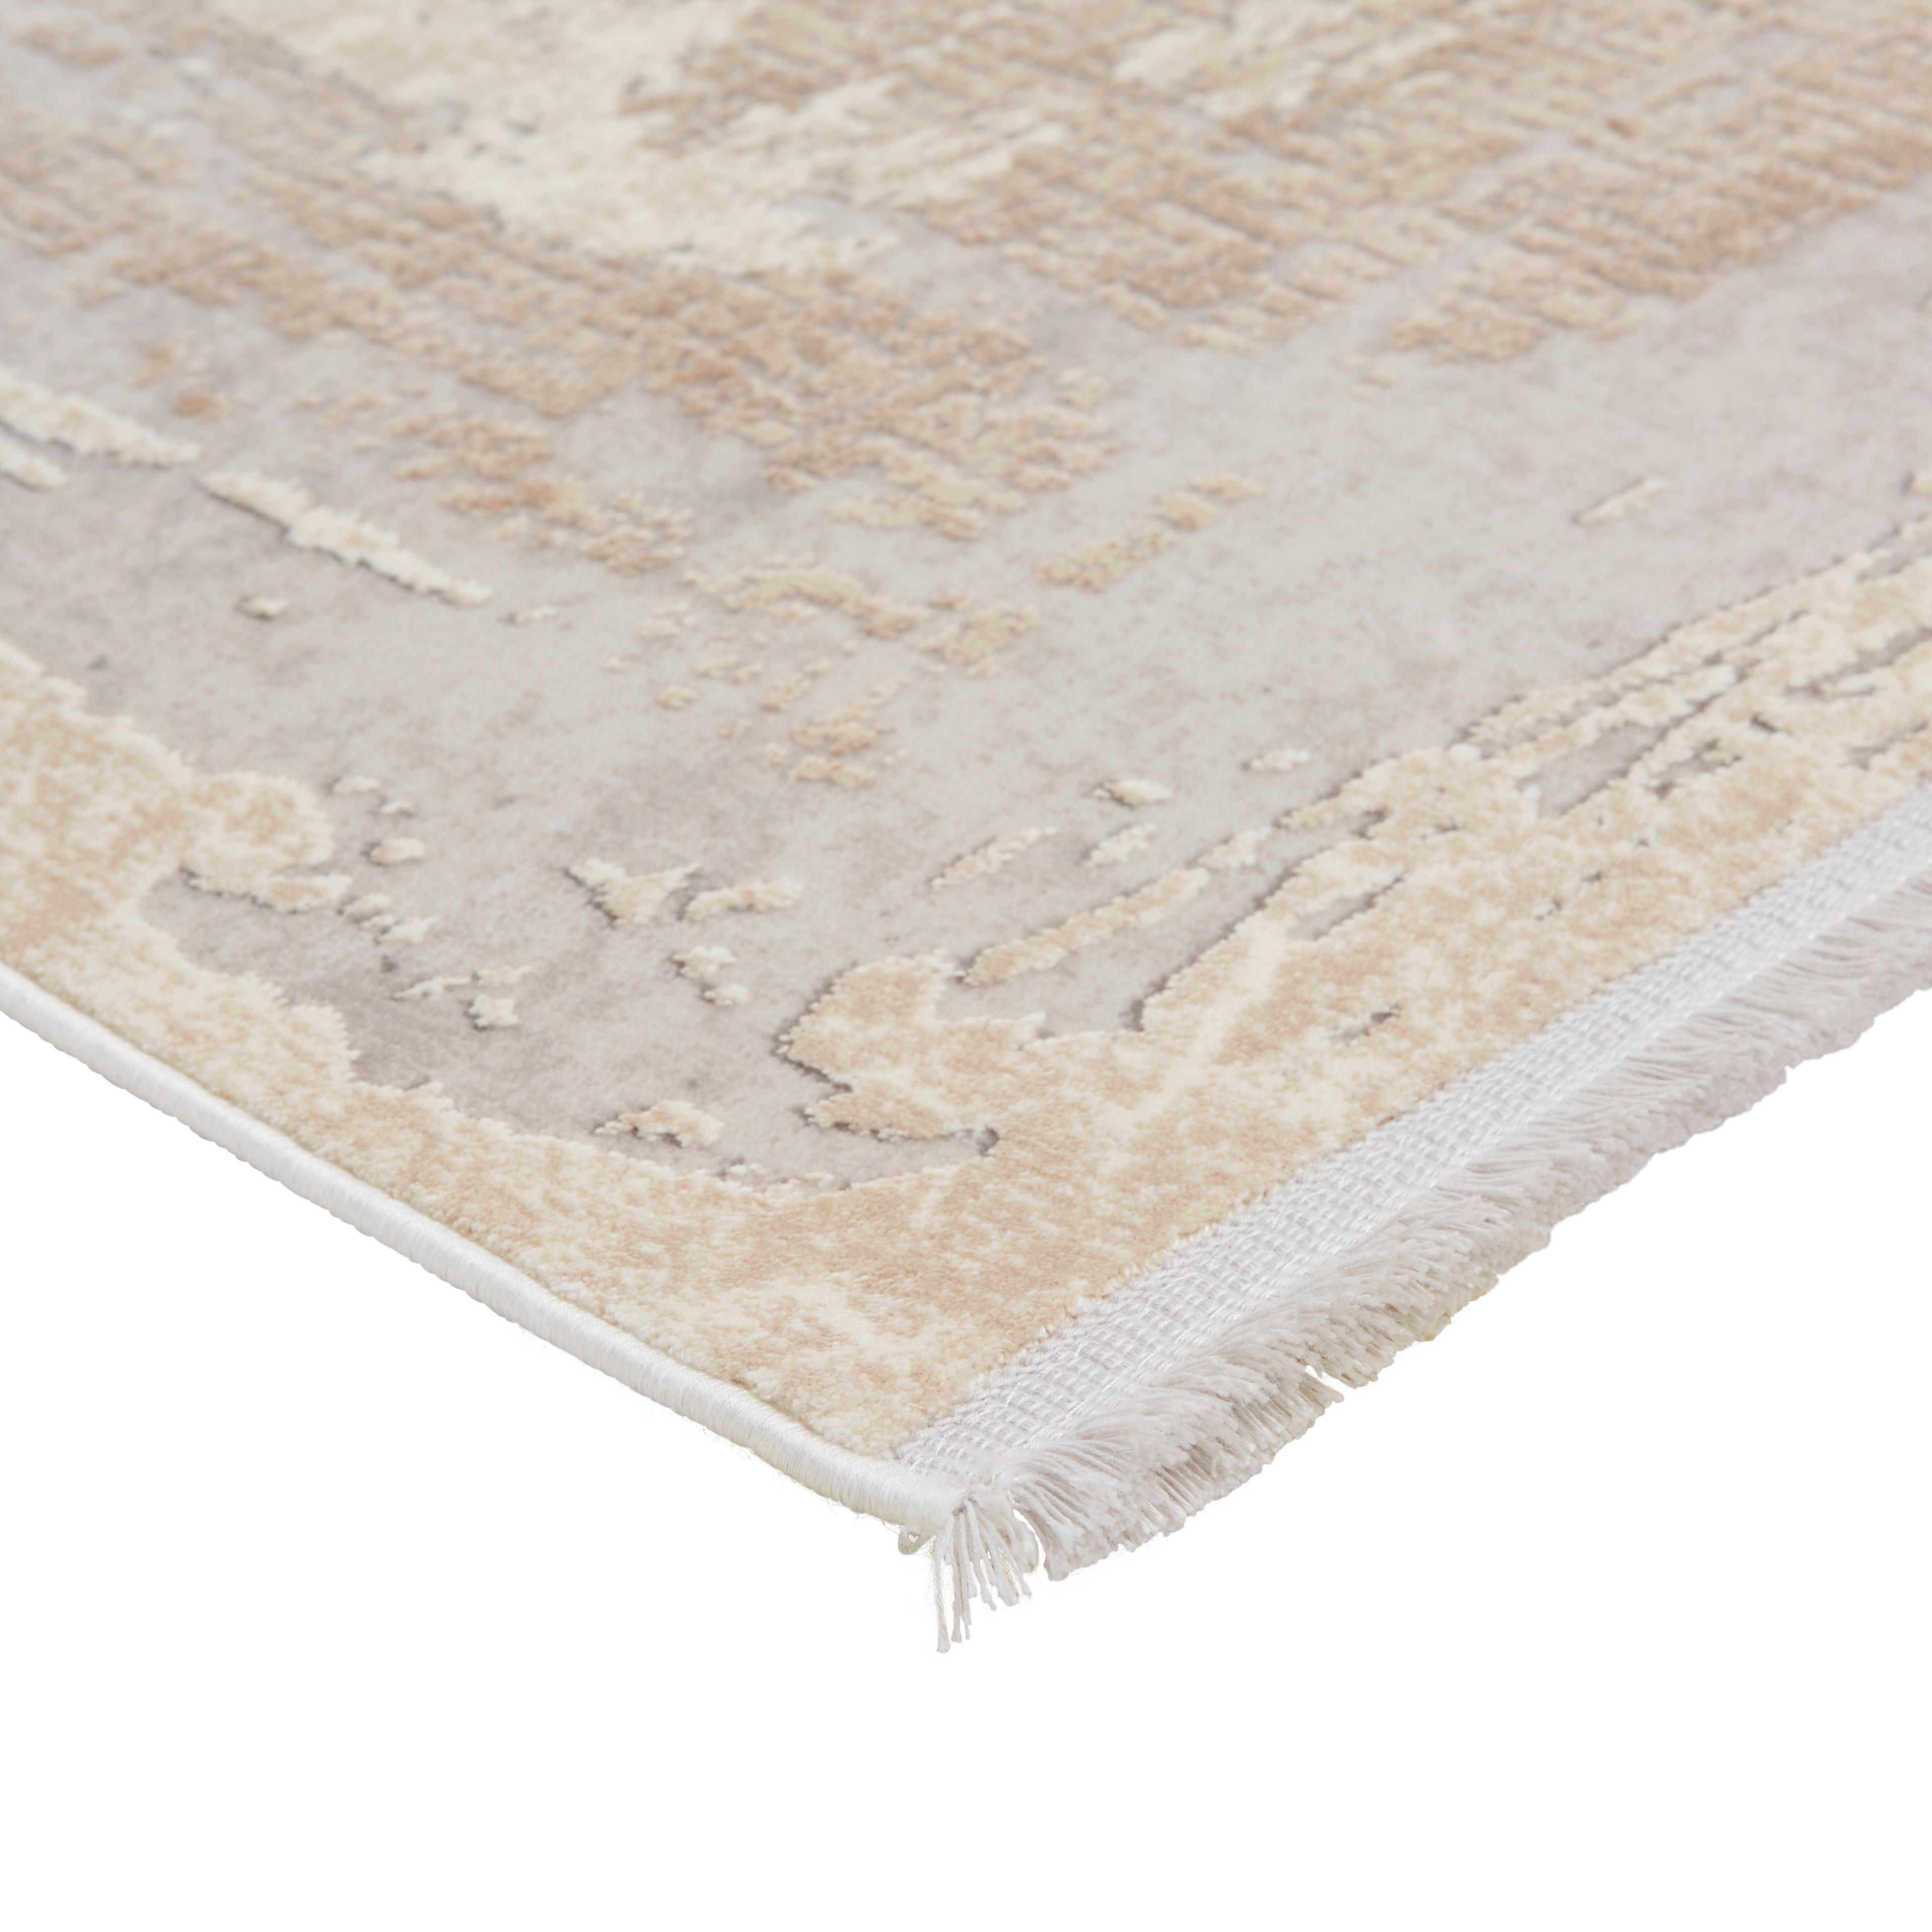 Handwebteppich in Beige ca. 160x230cm - Beige, Romantik / Landhaus, Textil (160/230cm) - Premium Living